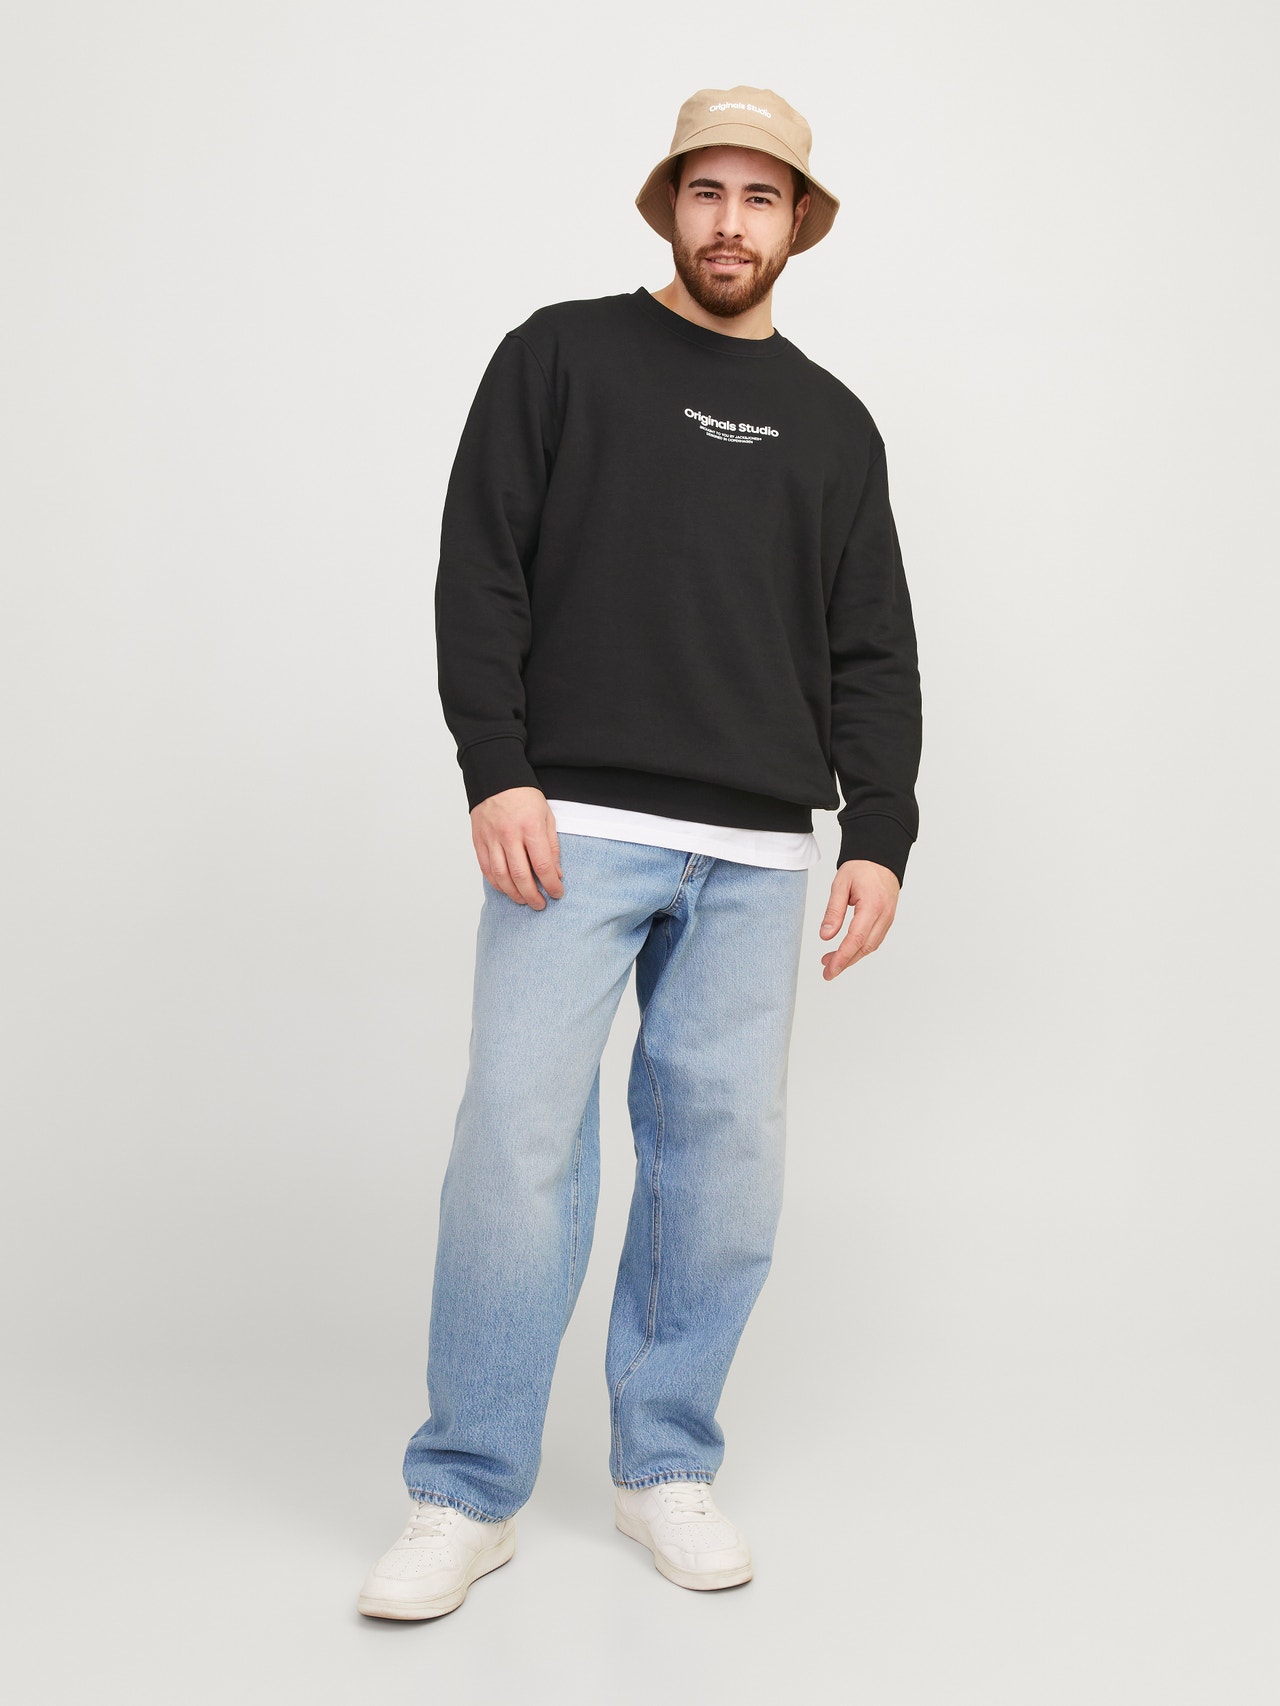 Jack & Jones Plus Size Gedruckt Sweatshirt mit Rundhals -Black - 12248198